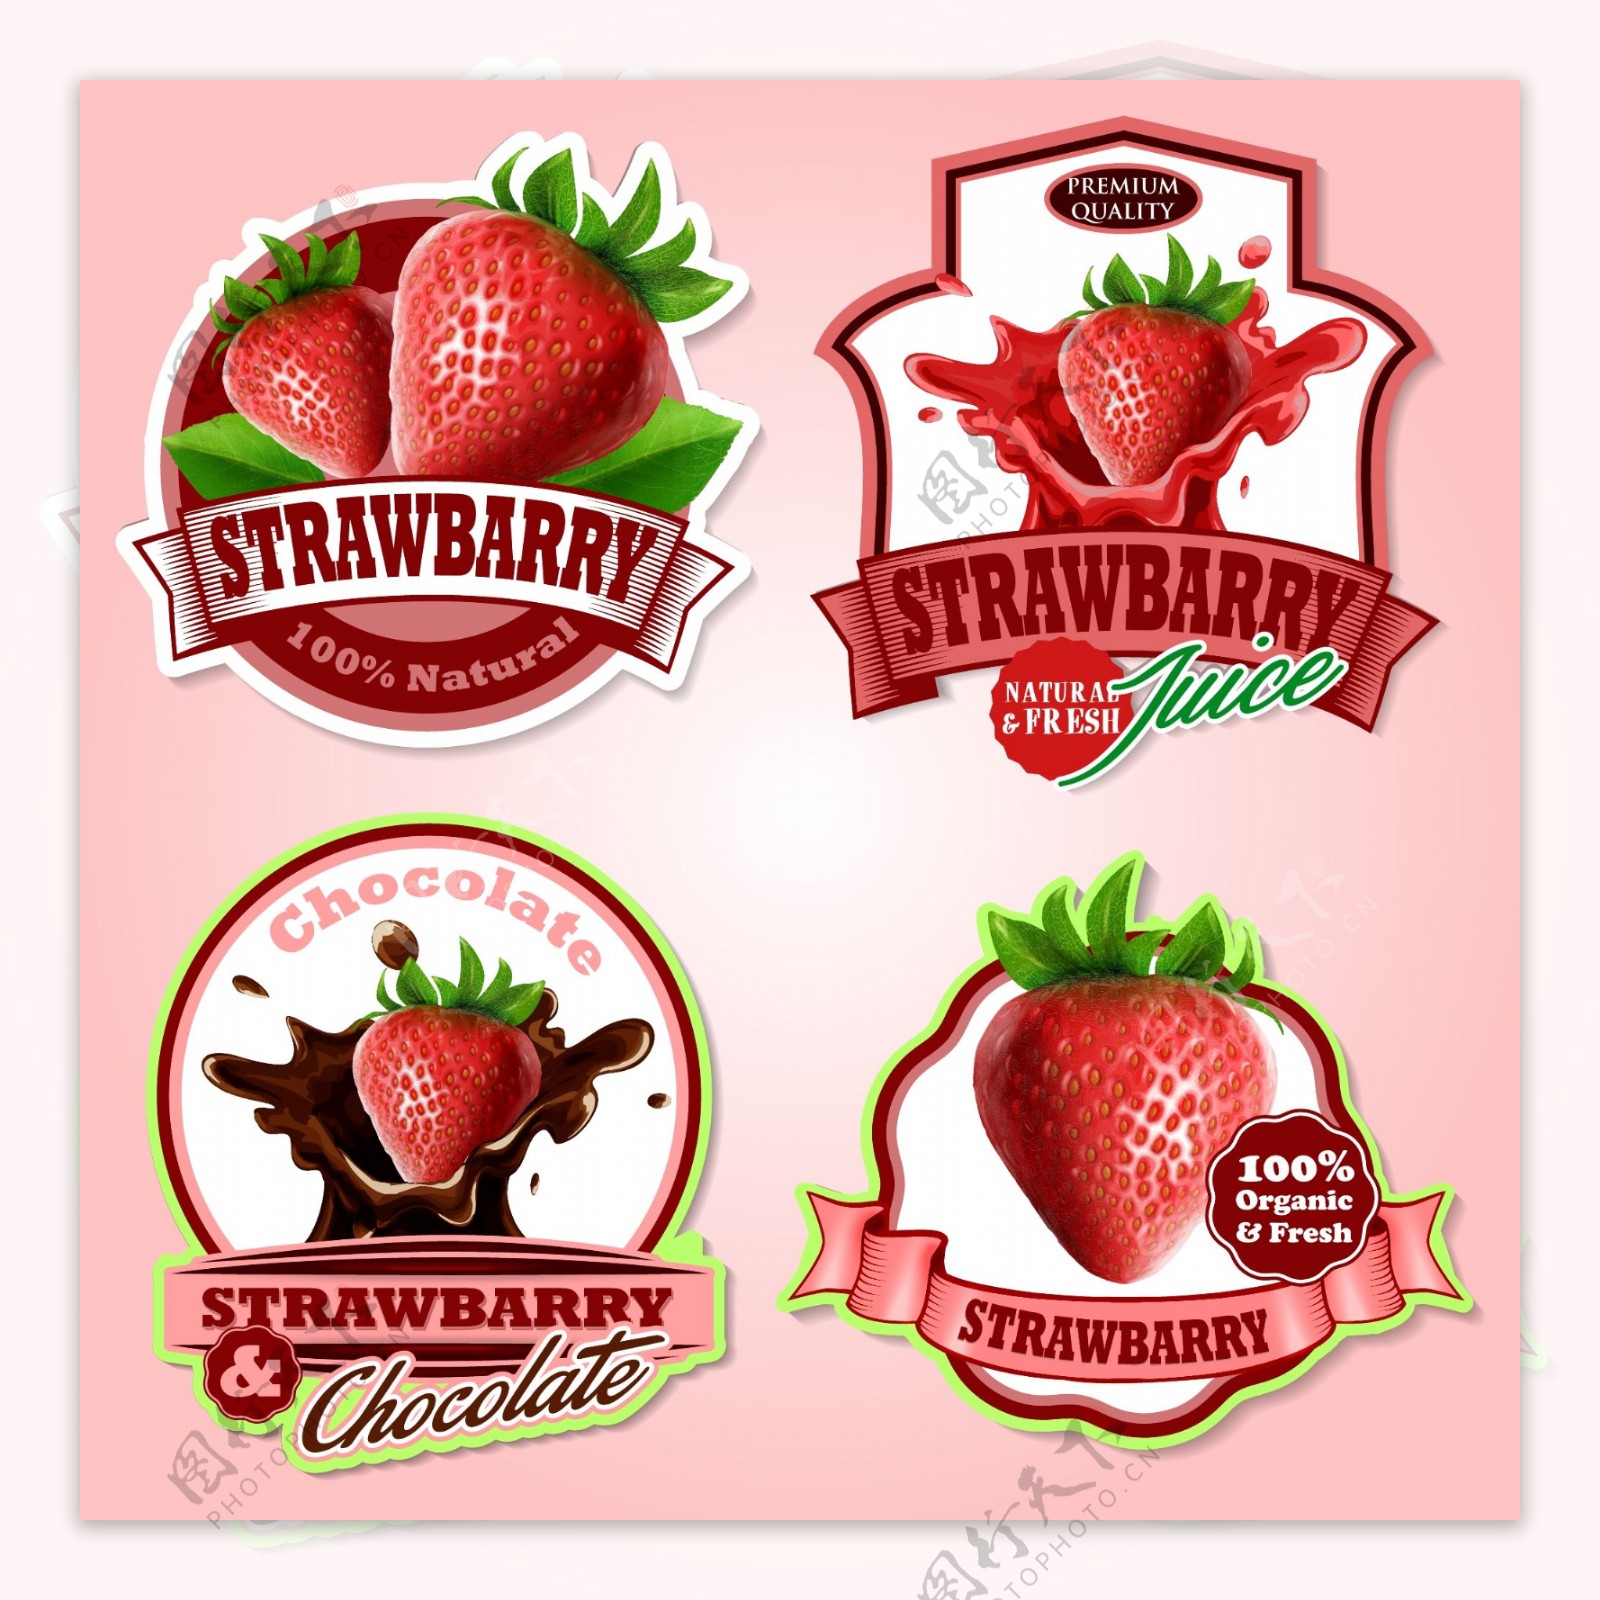 美味草莓标签矢量设计